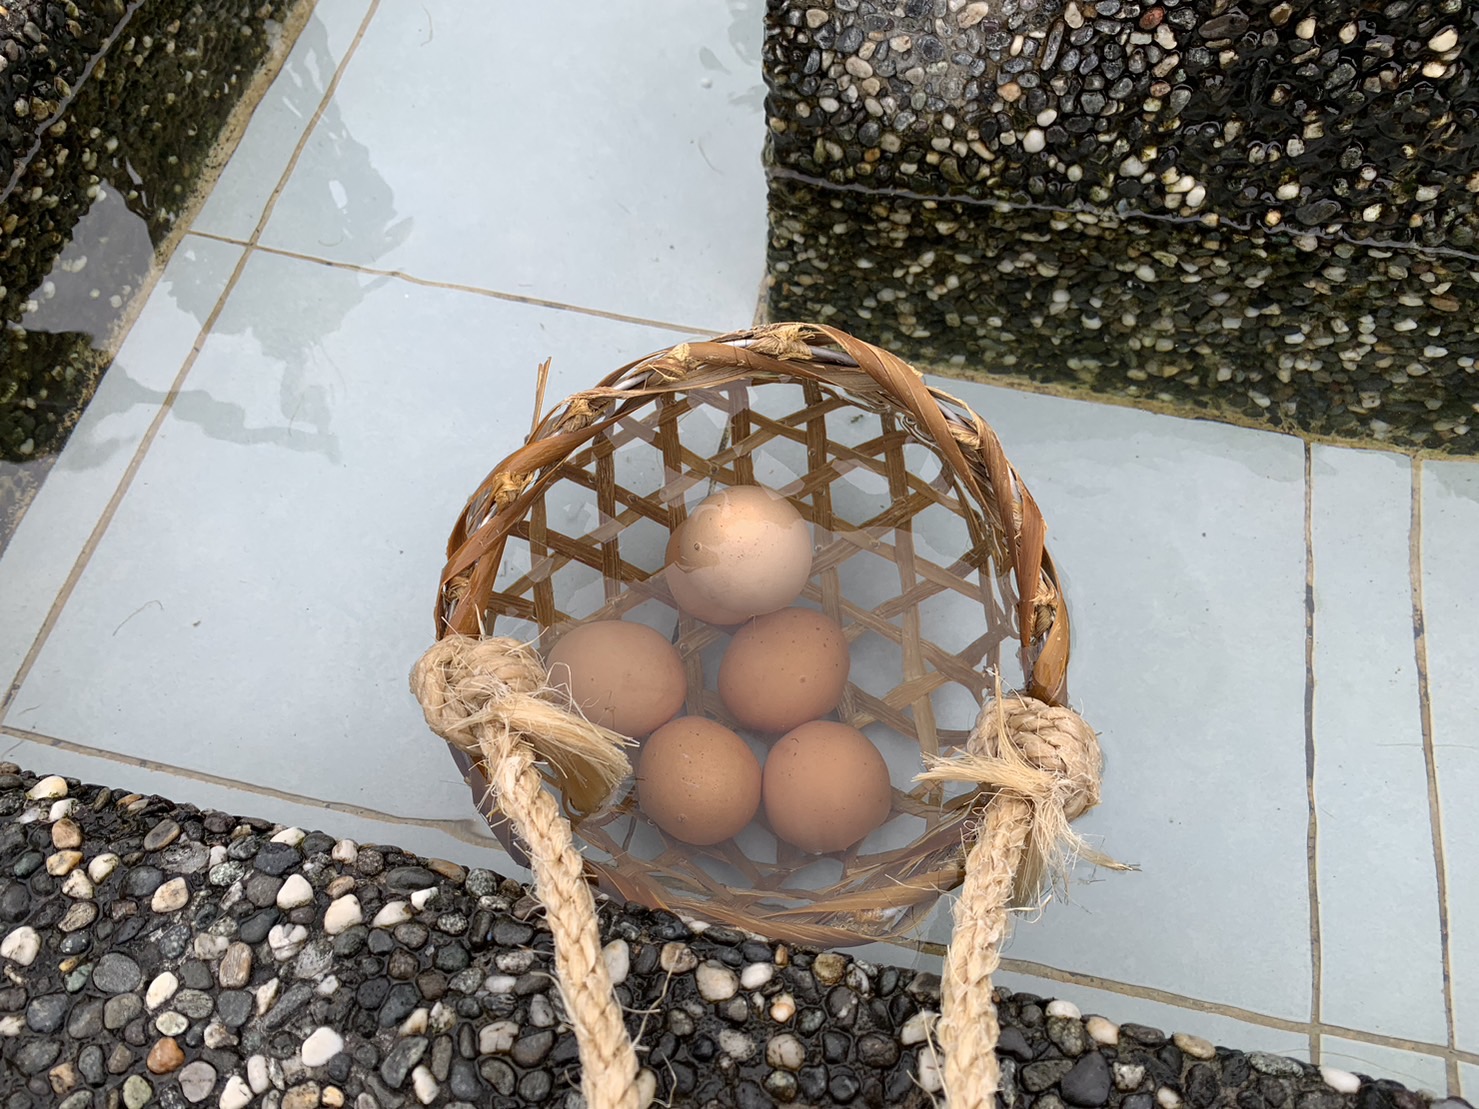 宜兰清水地热游憩区的鸡蛋没有涨价，每颗10元，造成民众入园抢购，业者大呼吃不消。图／业者提供